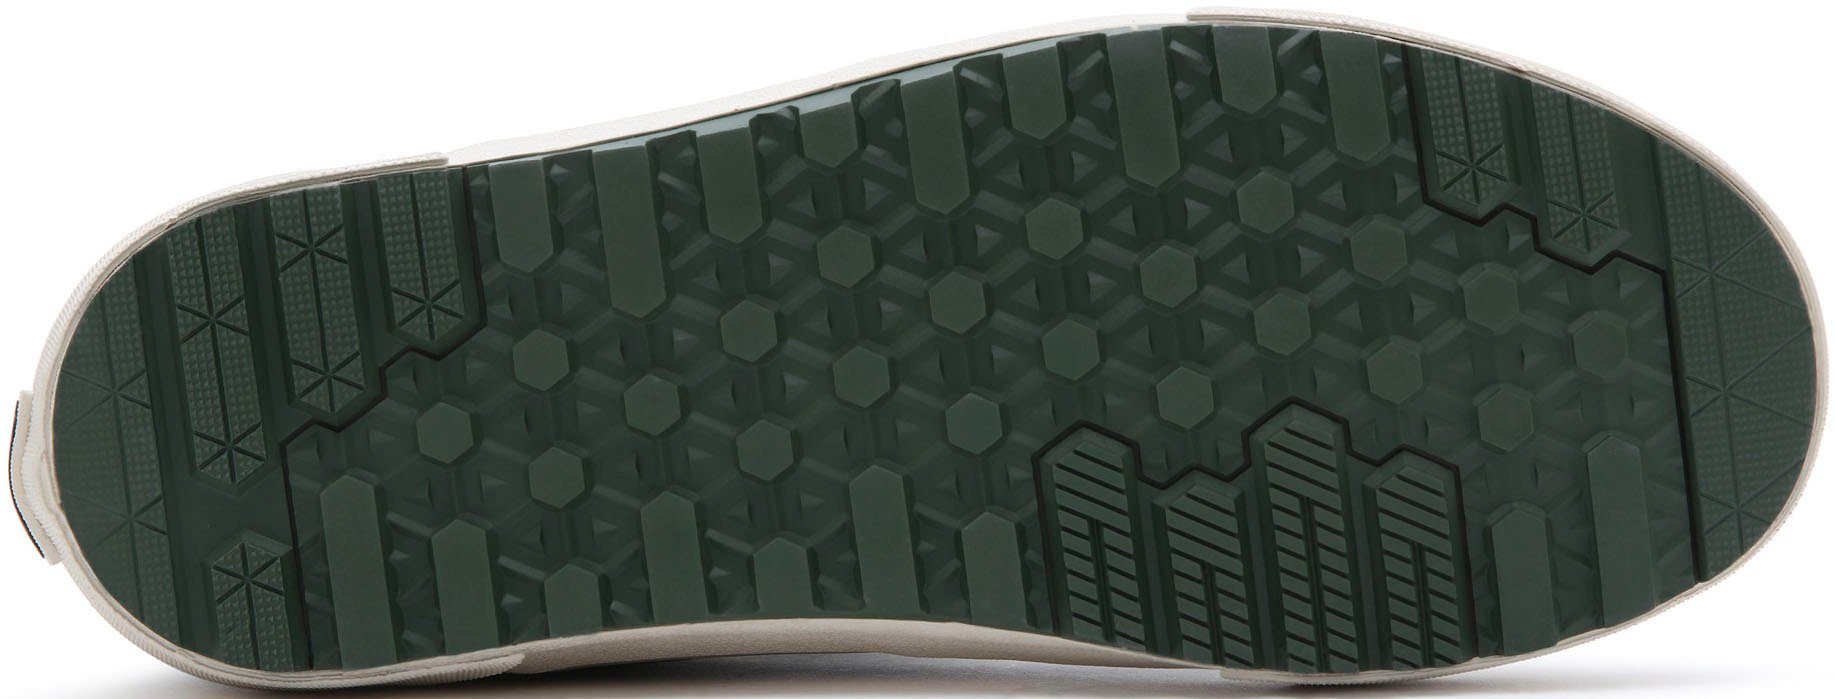 Vans MTE-2 an kontrastfarbenem graublau Logobadge Sneaker Ferse SK8-Hi der mit